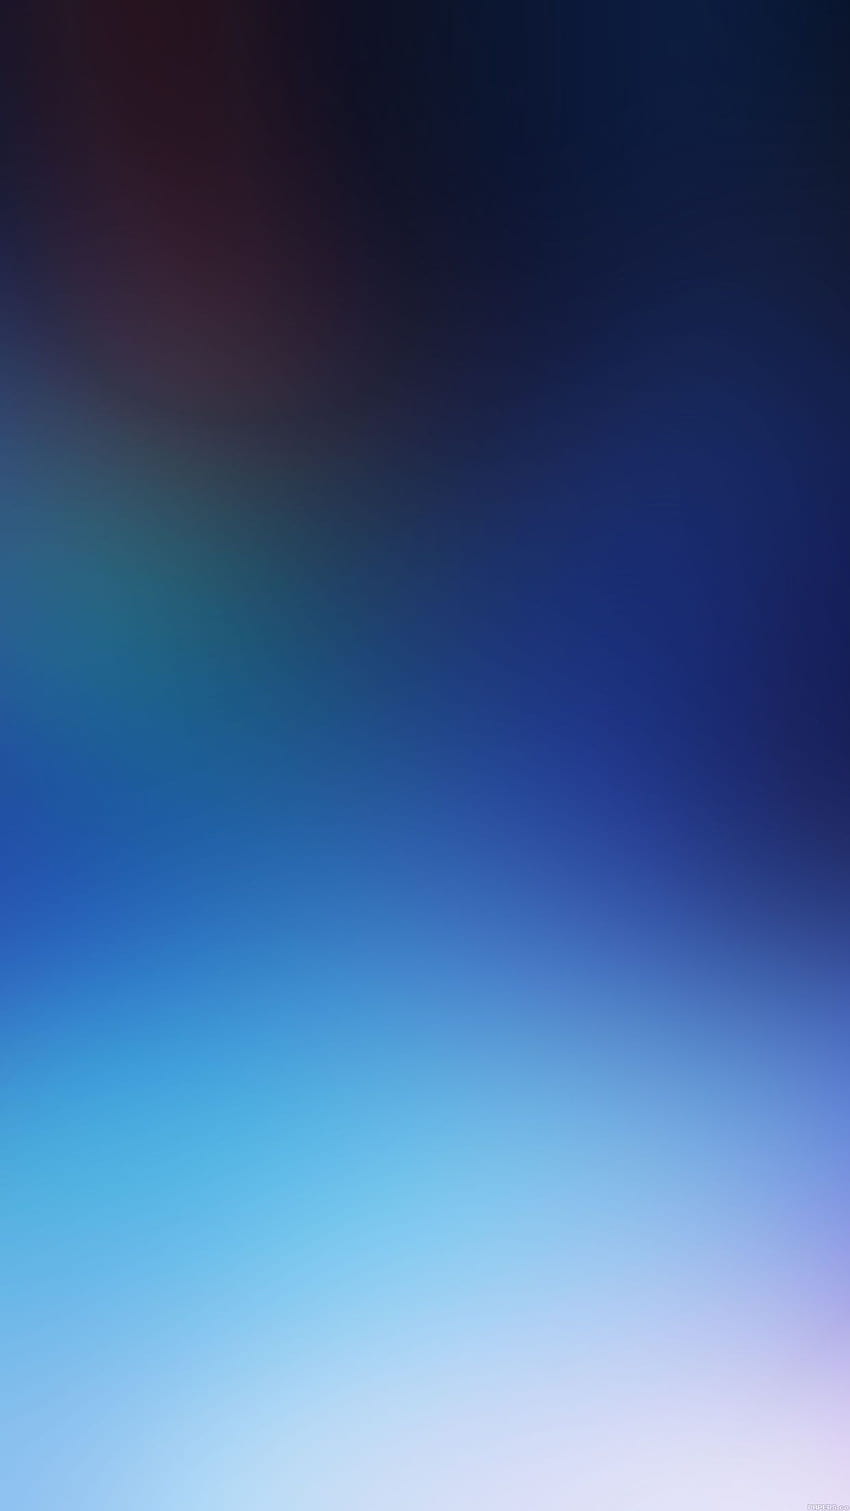 Màu xanh dương mờ luôn là một sự lựa chọn thú vị để trang trí cho chiếc iPhone của bạn. Hãy xem hình ảnh để tìm hiểu sự độc đáo của những hình nền với màu xanh dương mờ. Cảm nhận sự mộc mạc, đơn giản nhưng không kém phần trẻ trung và hiện đại của chúng ngay bây giờ!